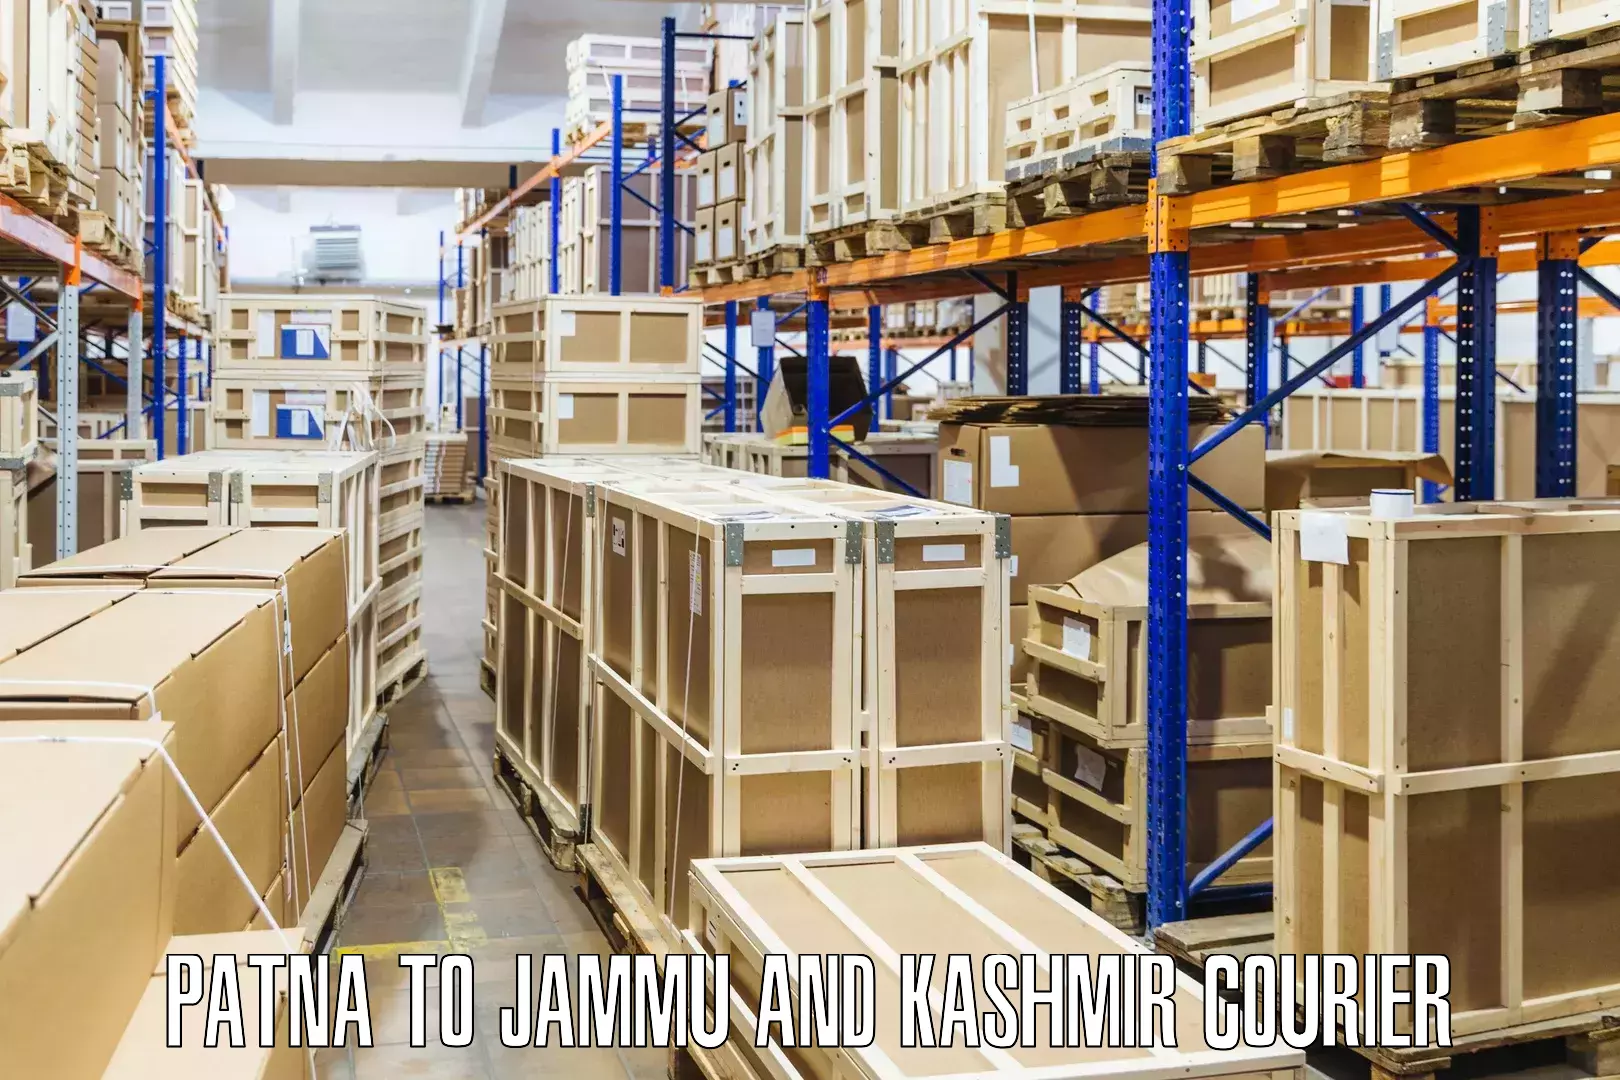 Smart logistics solutions Patna to Jammu and Kashmir